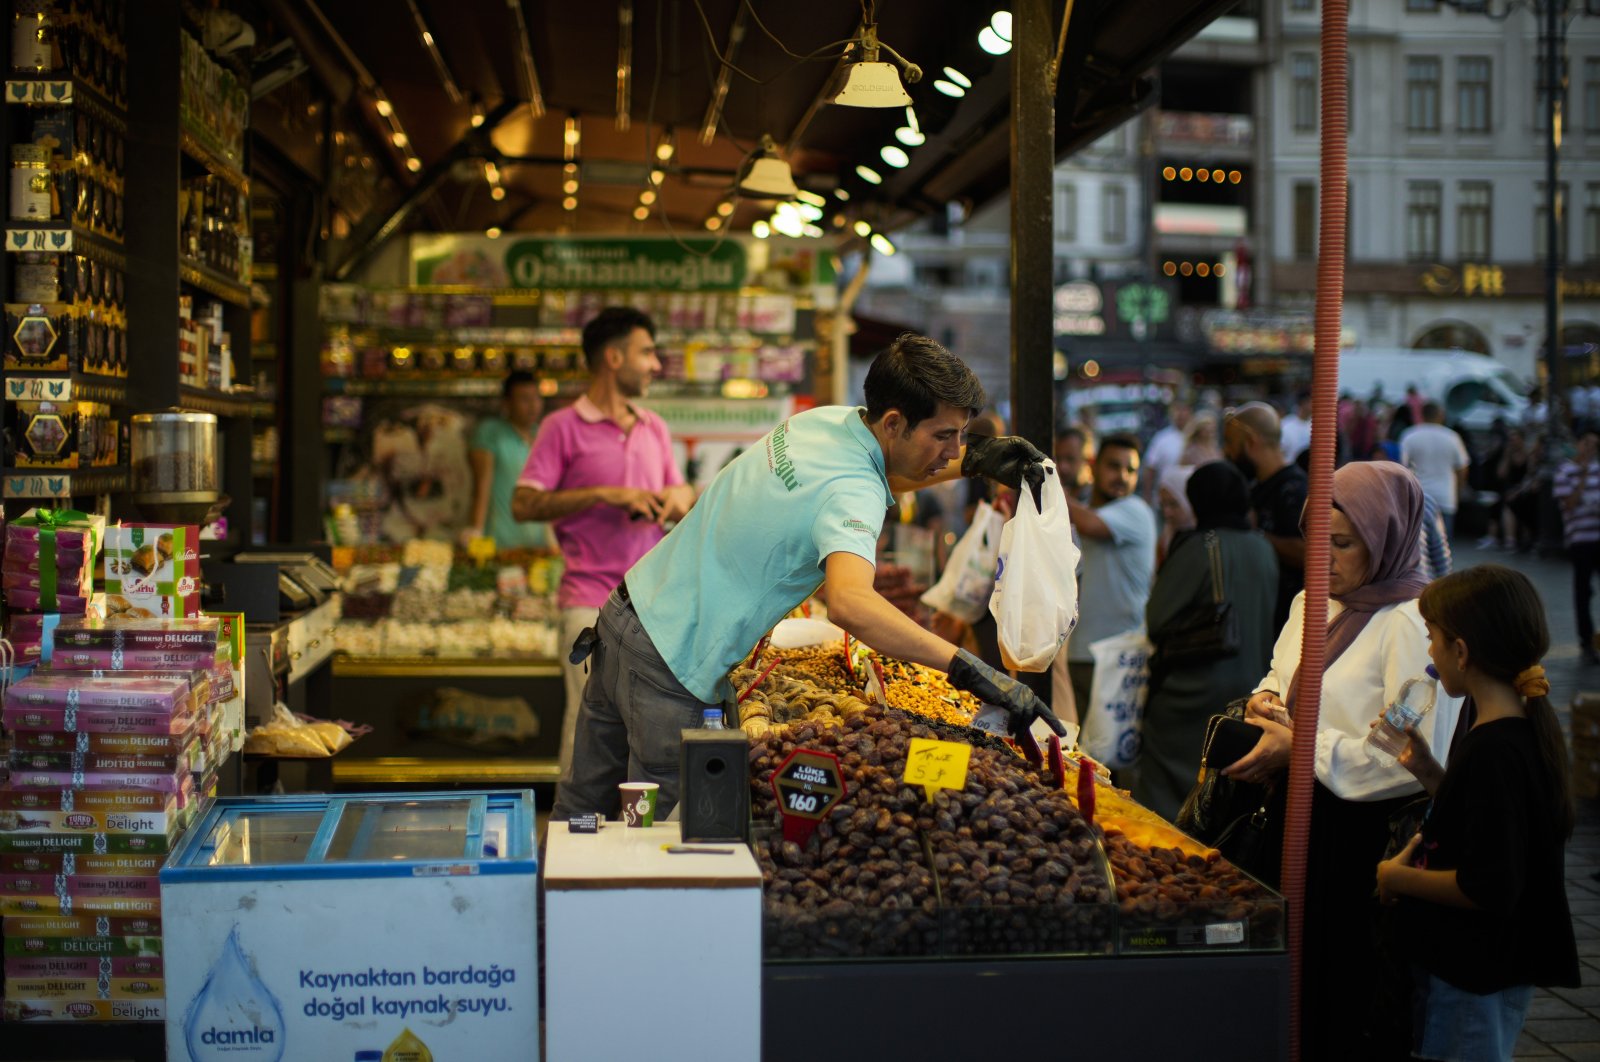 Dari PDB, data inflasi hingga peta jalan baru: Agenda sibuk menunggu Türkiye